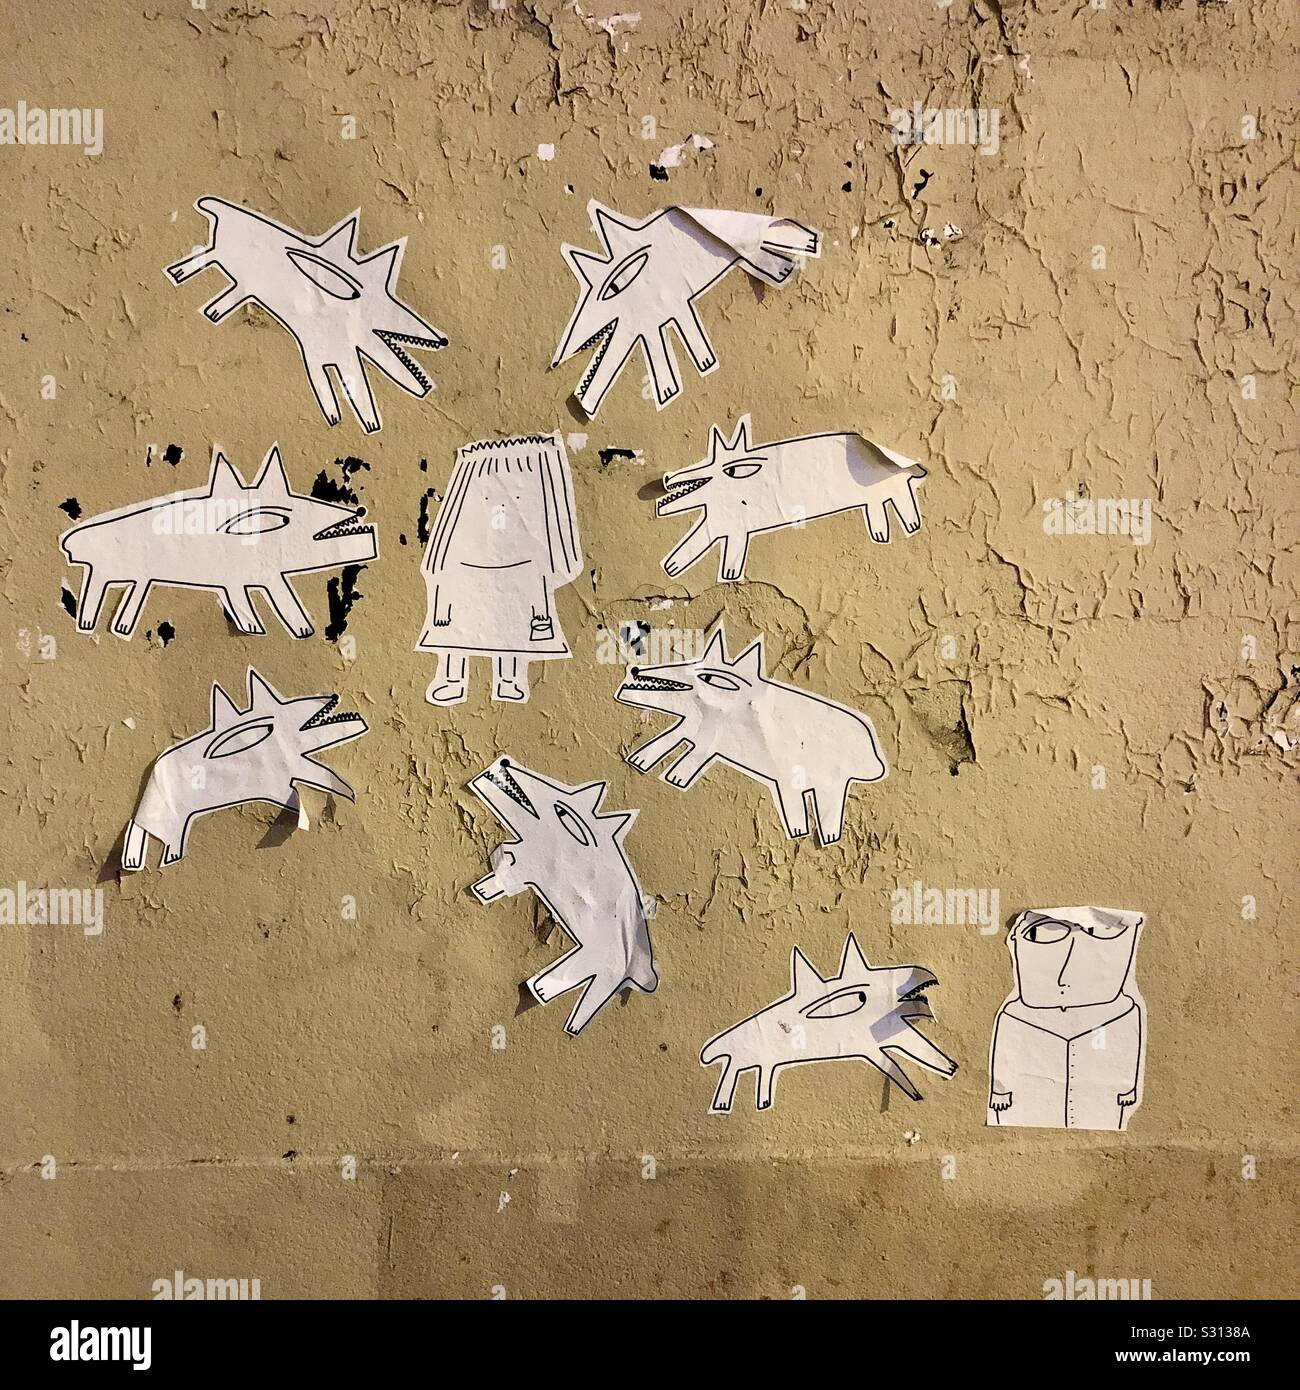 Coupe-papier graffiti de chiens autour d'une femme - Paris 11ème arrondissement, France. Banque D'Images